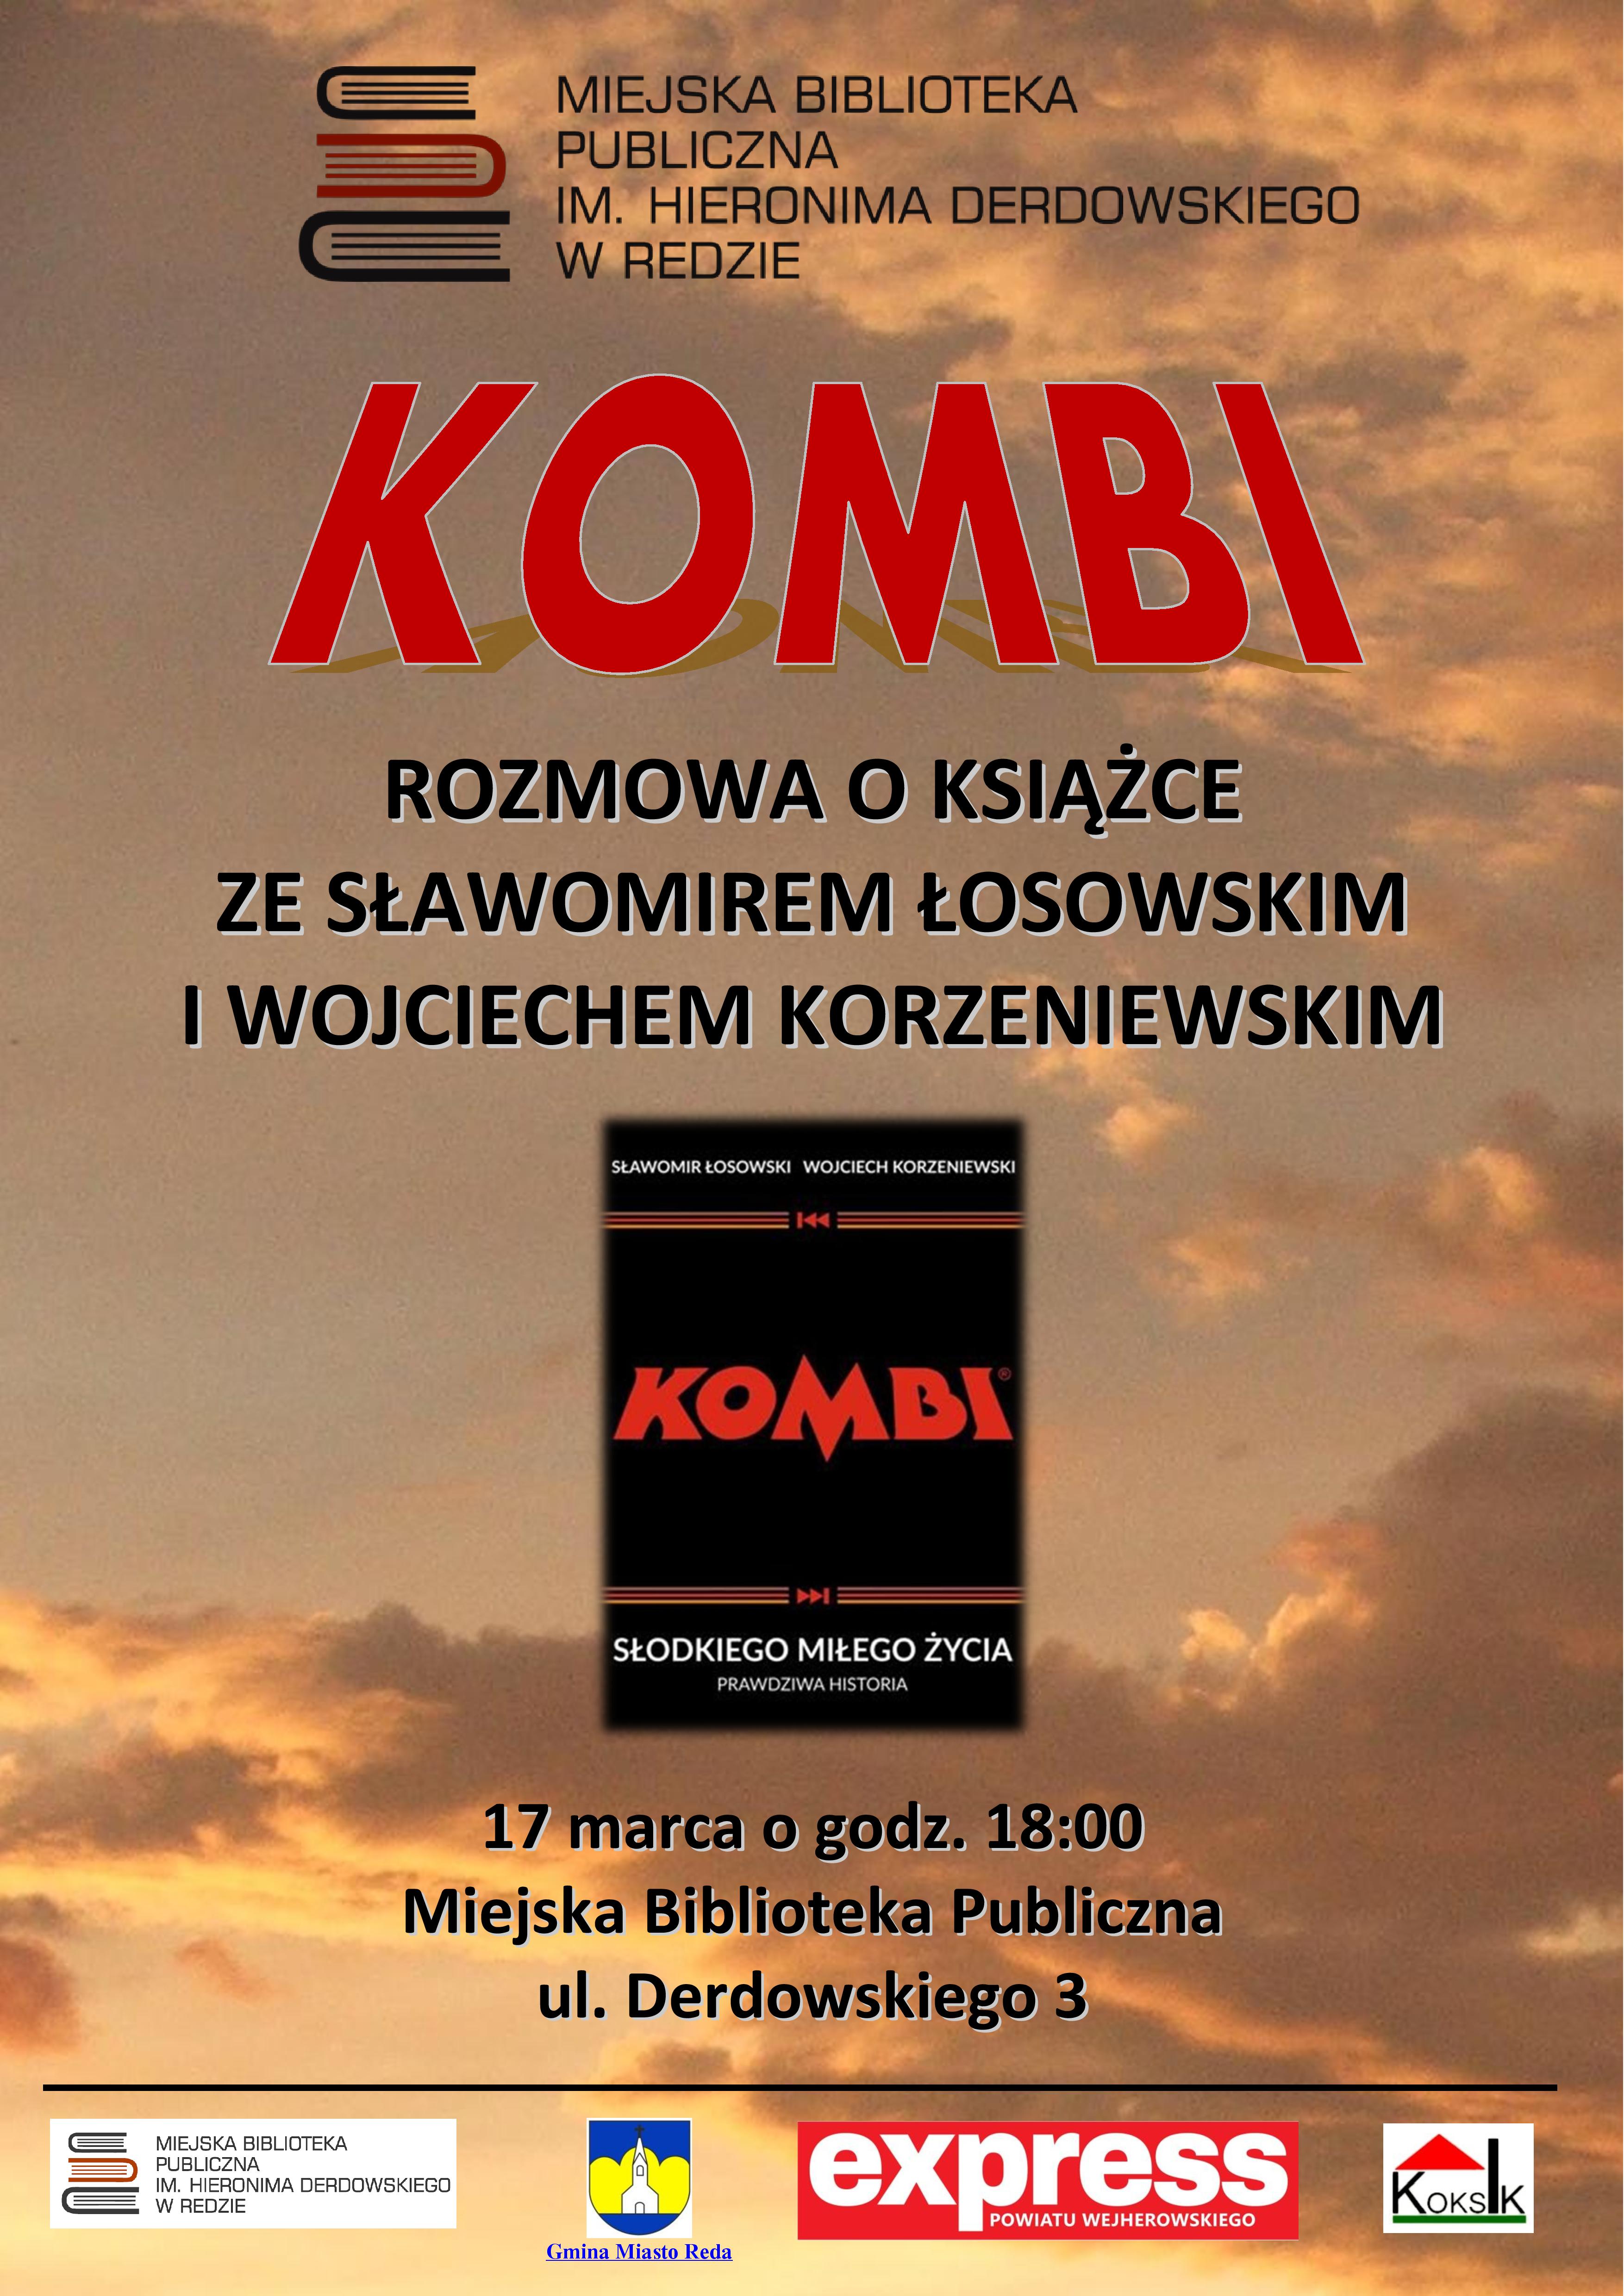 Rozmowa o książce z muzykami zespołu KOMBI